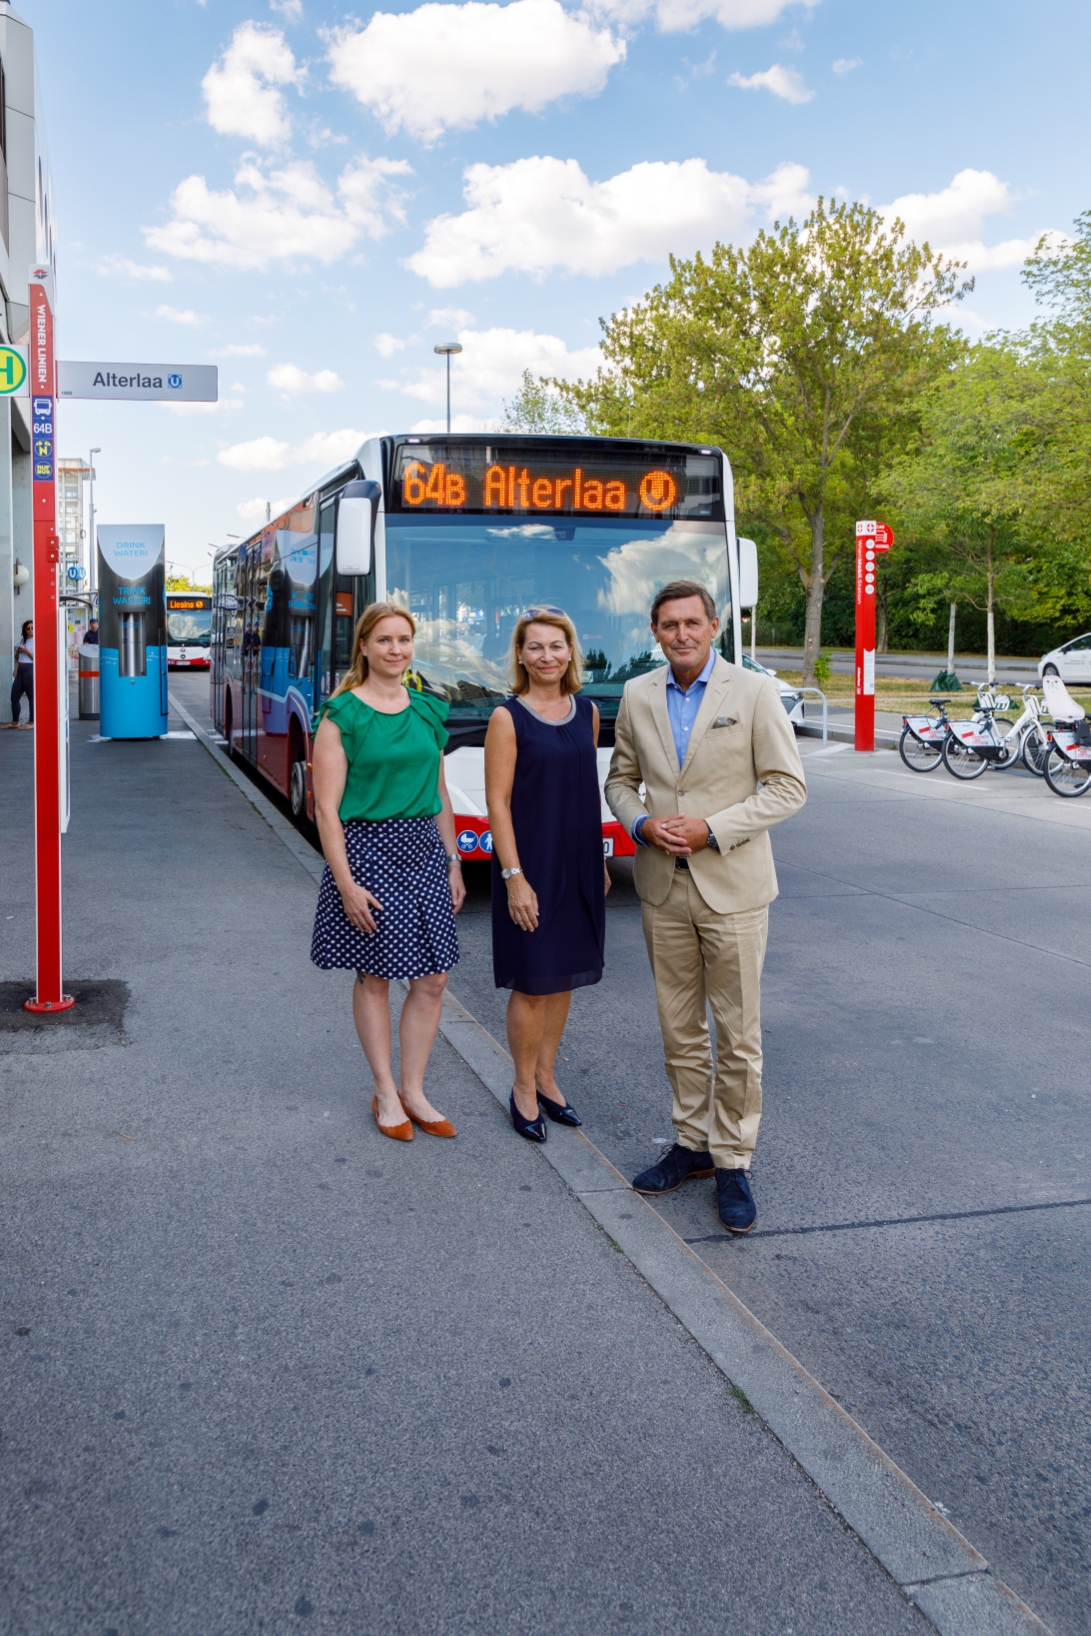 Die Wiener Linien erweitern ihr Busnetz in Liesing, um die Fahrgäste noch besser an U-, S- und Badner Bahn anzuschließen. Dafür werden zwei Buslinien neu geschaffen - 61B und 64B - und zwei bestehende Linien neu organisiert - 61A und 64A. Vlnr: Angelika Pipal-Leixner, Mobilitätssprecherin NEOS Wien; Alexandra Reinagl, Geschäftsführerin Wiener Linien, Öffi-Stadtrat Peter Hanke